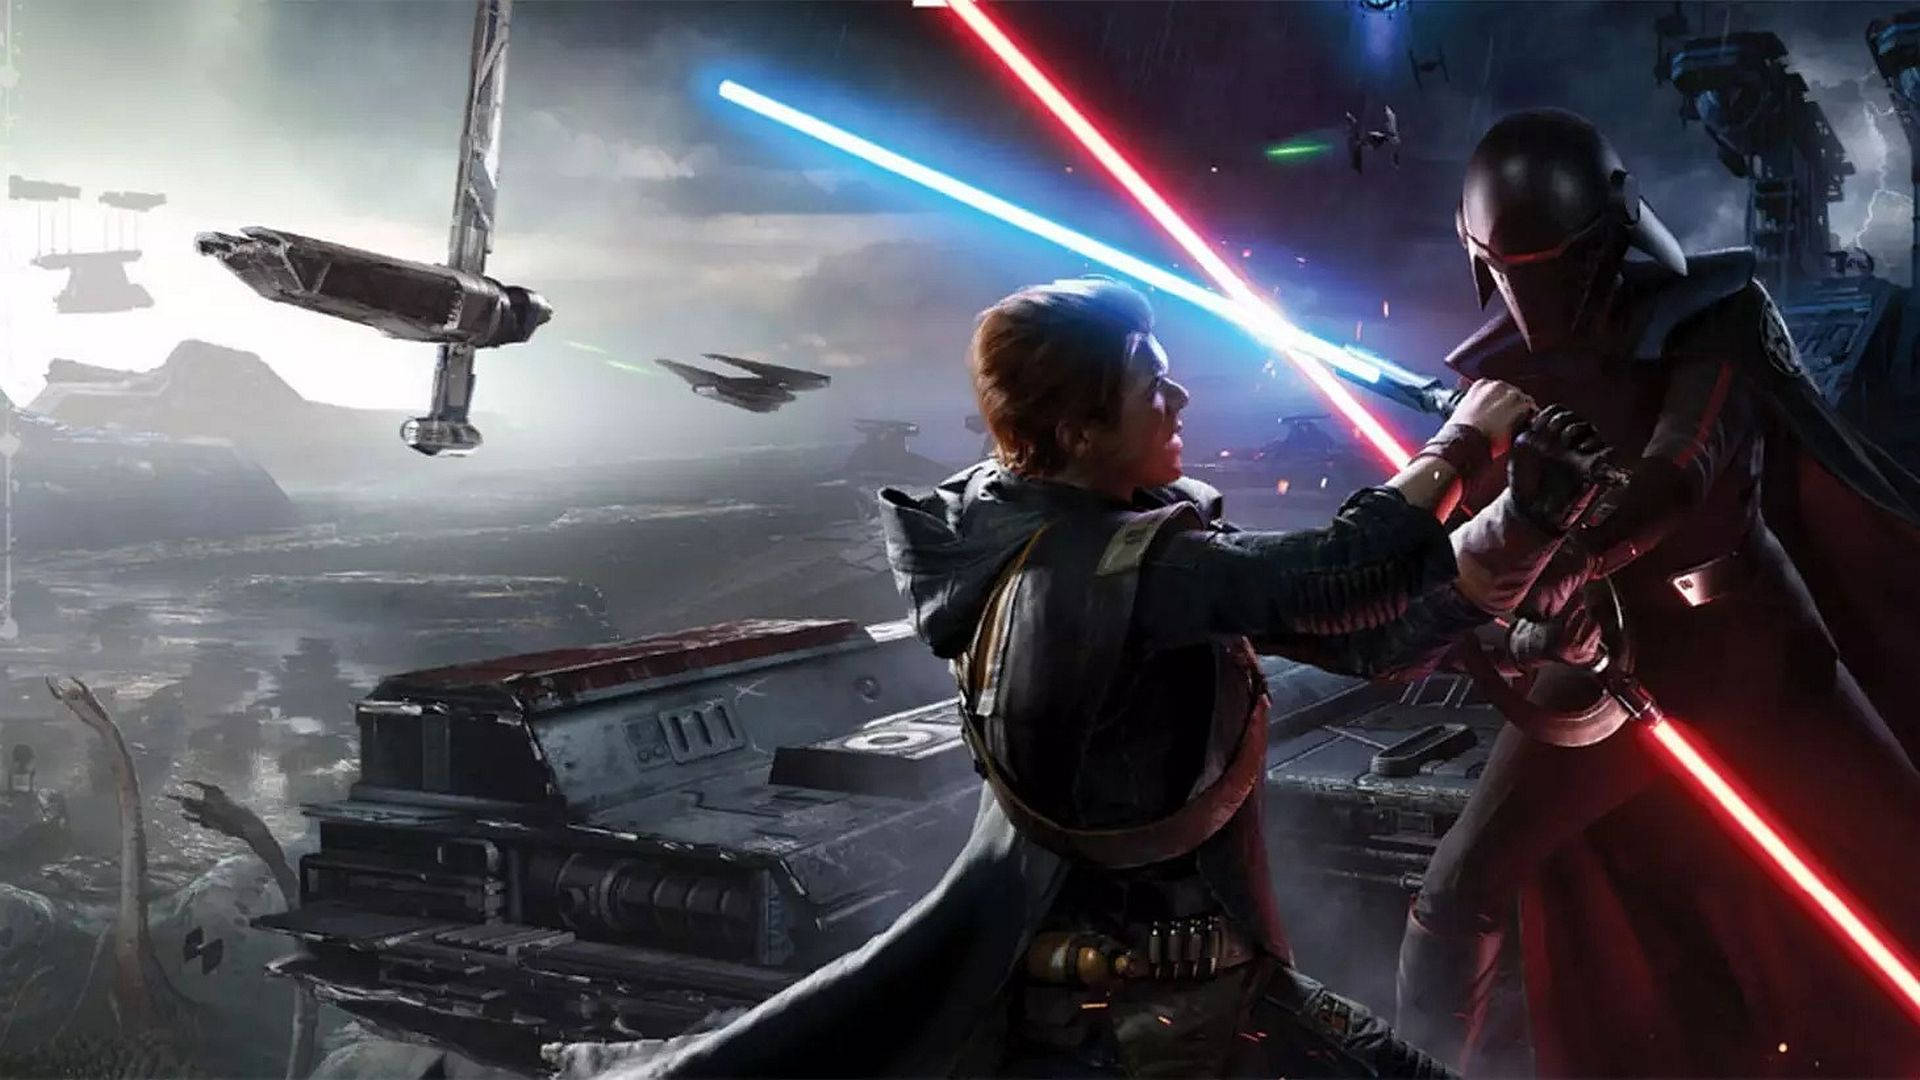 Inquisitor Star Wars Jedi: Fallen Order Background